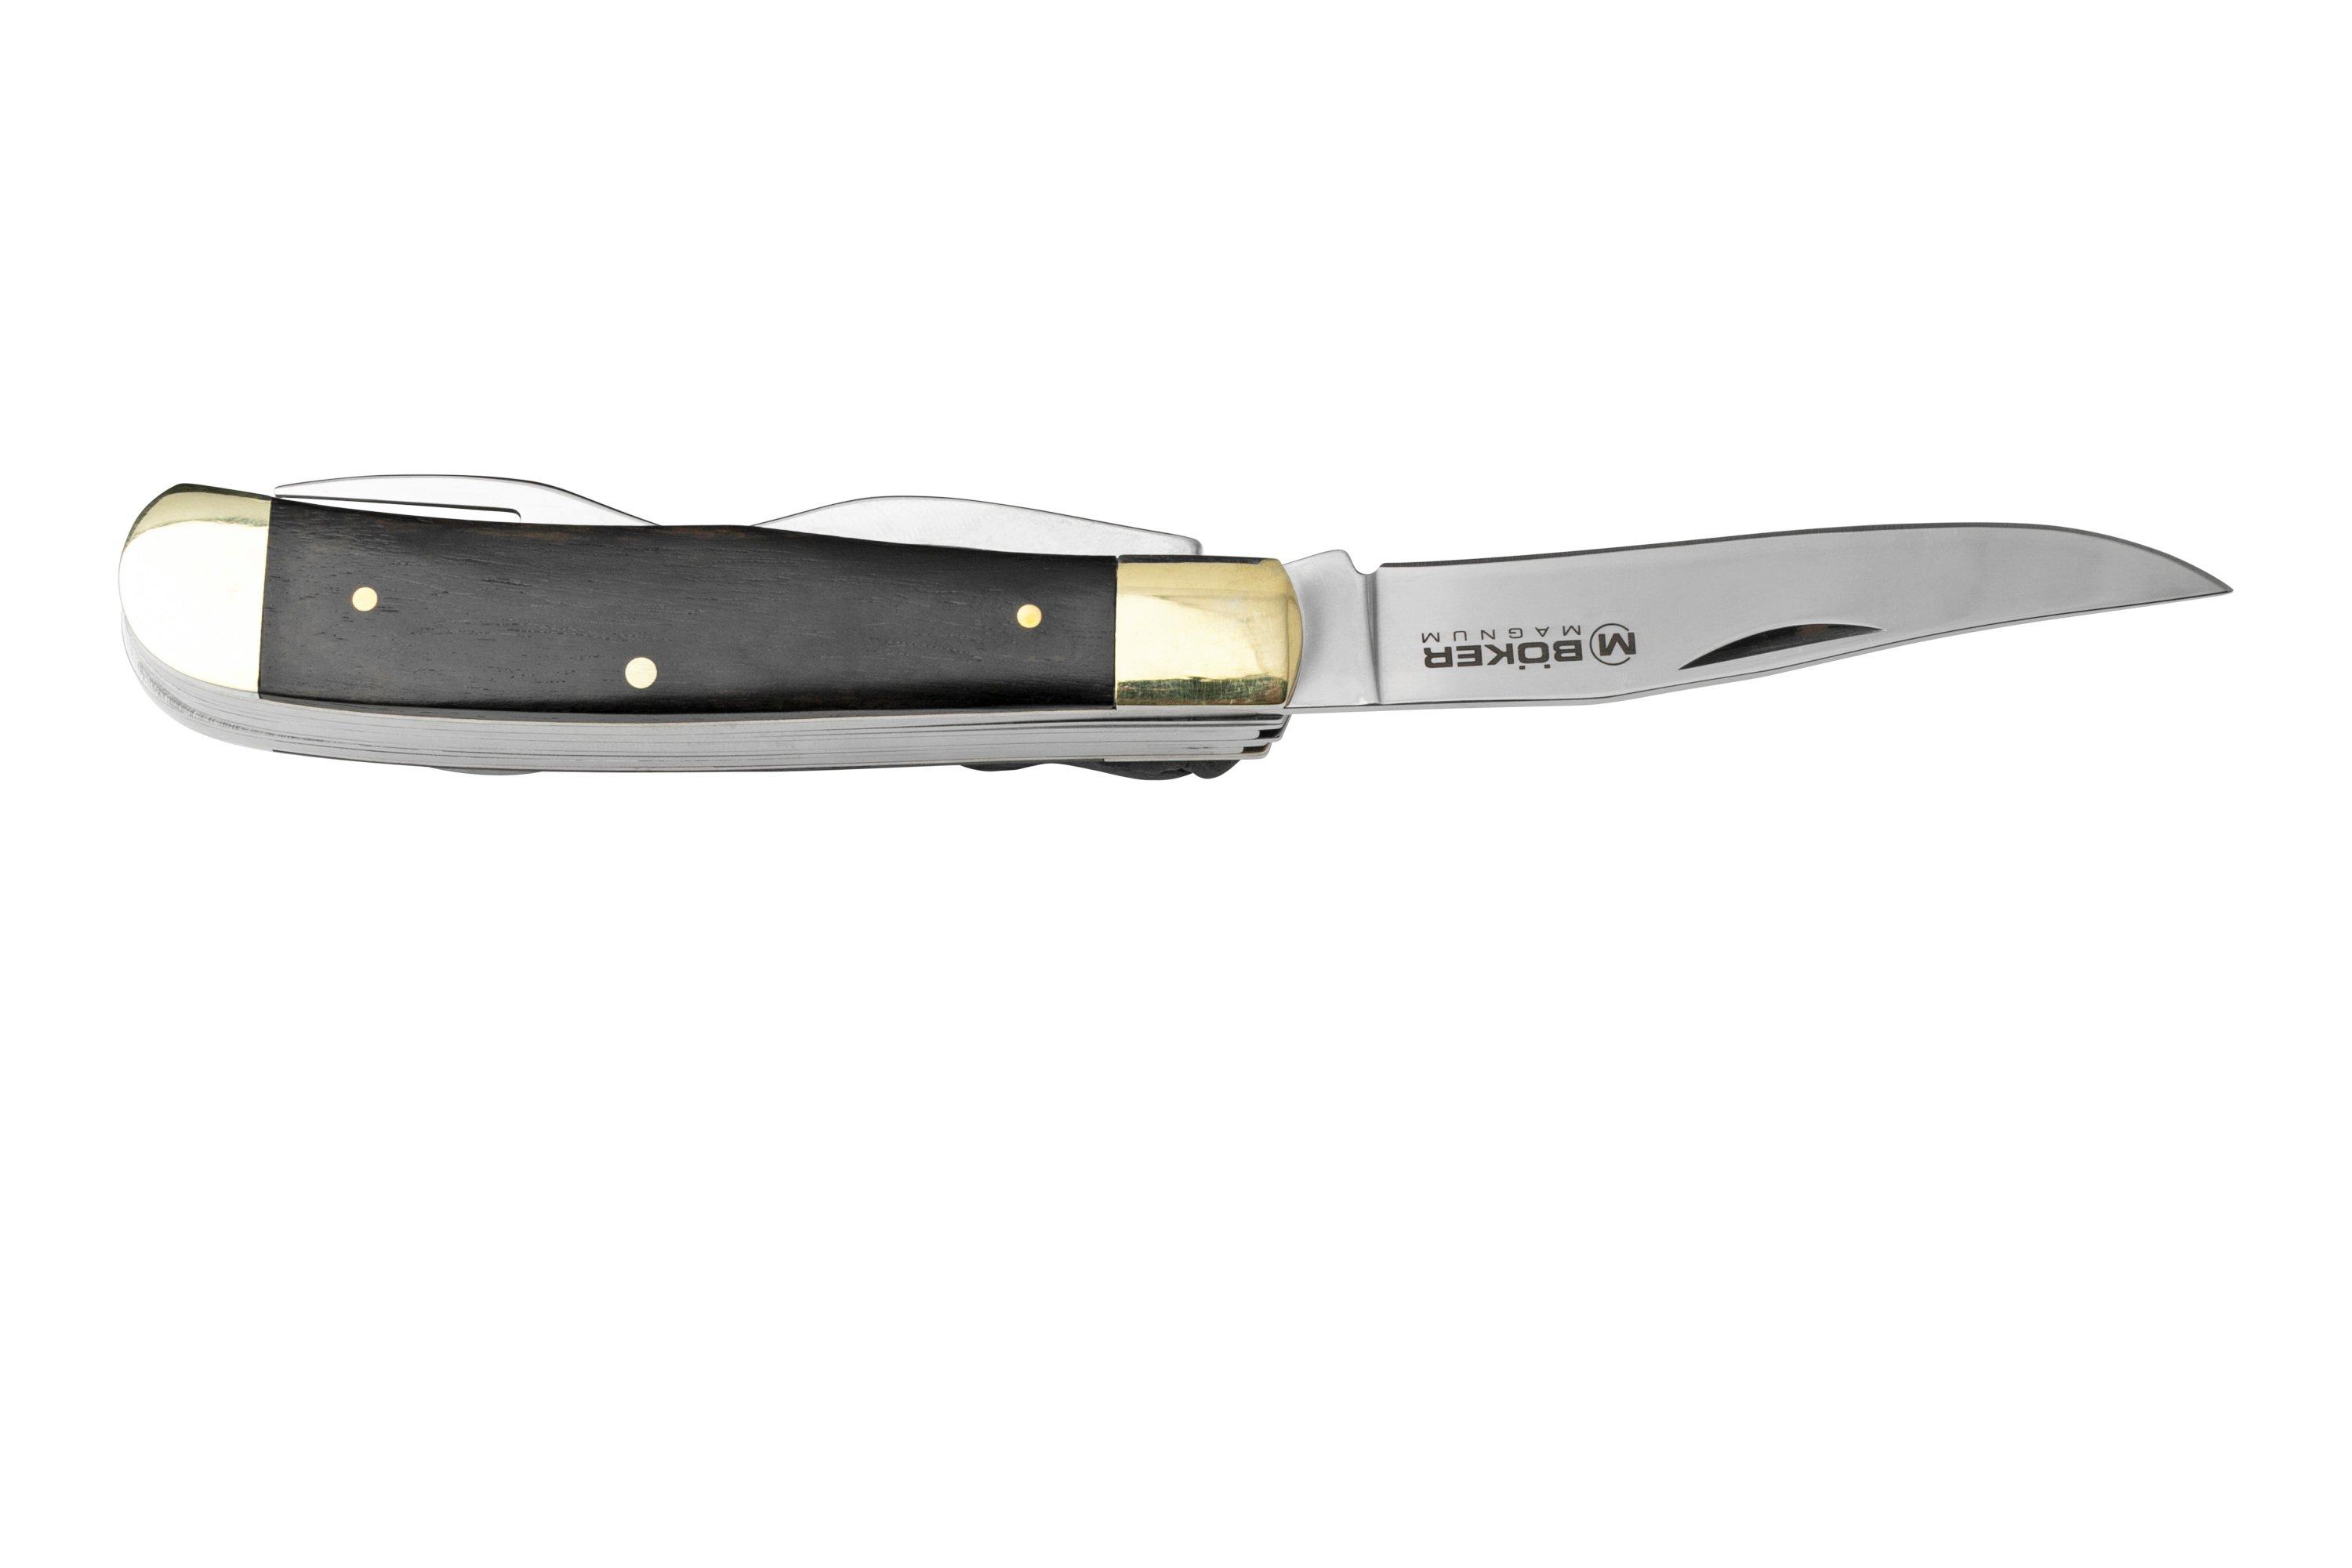 Saucisson d' 1M20 🤪 couteau offert 😍 - B&M Bruay Labuissiere